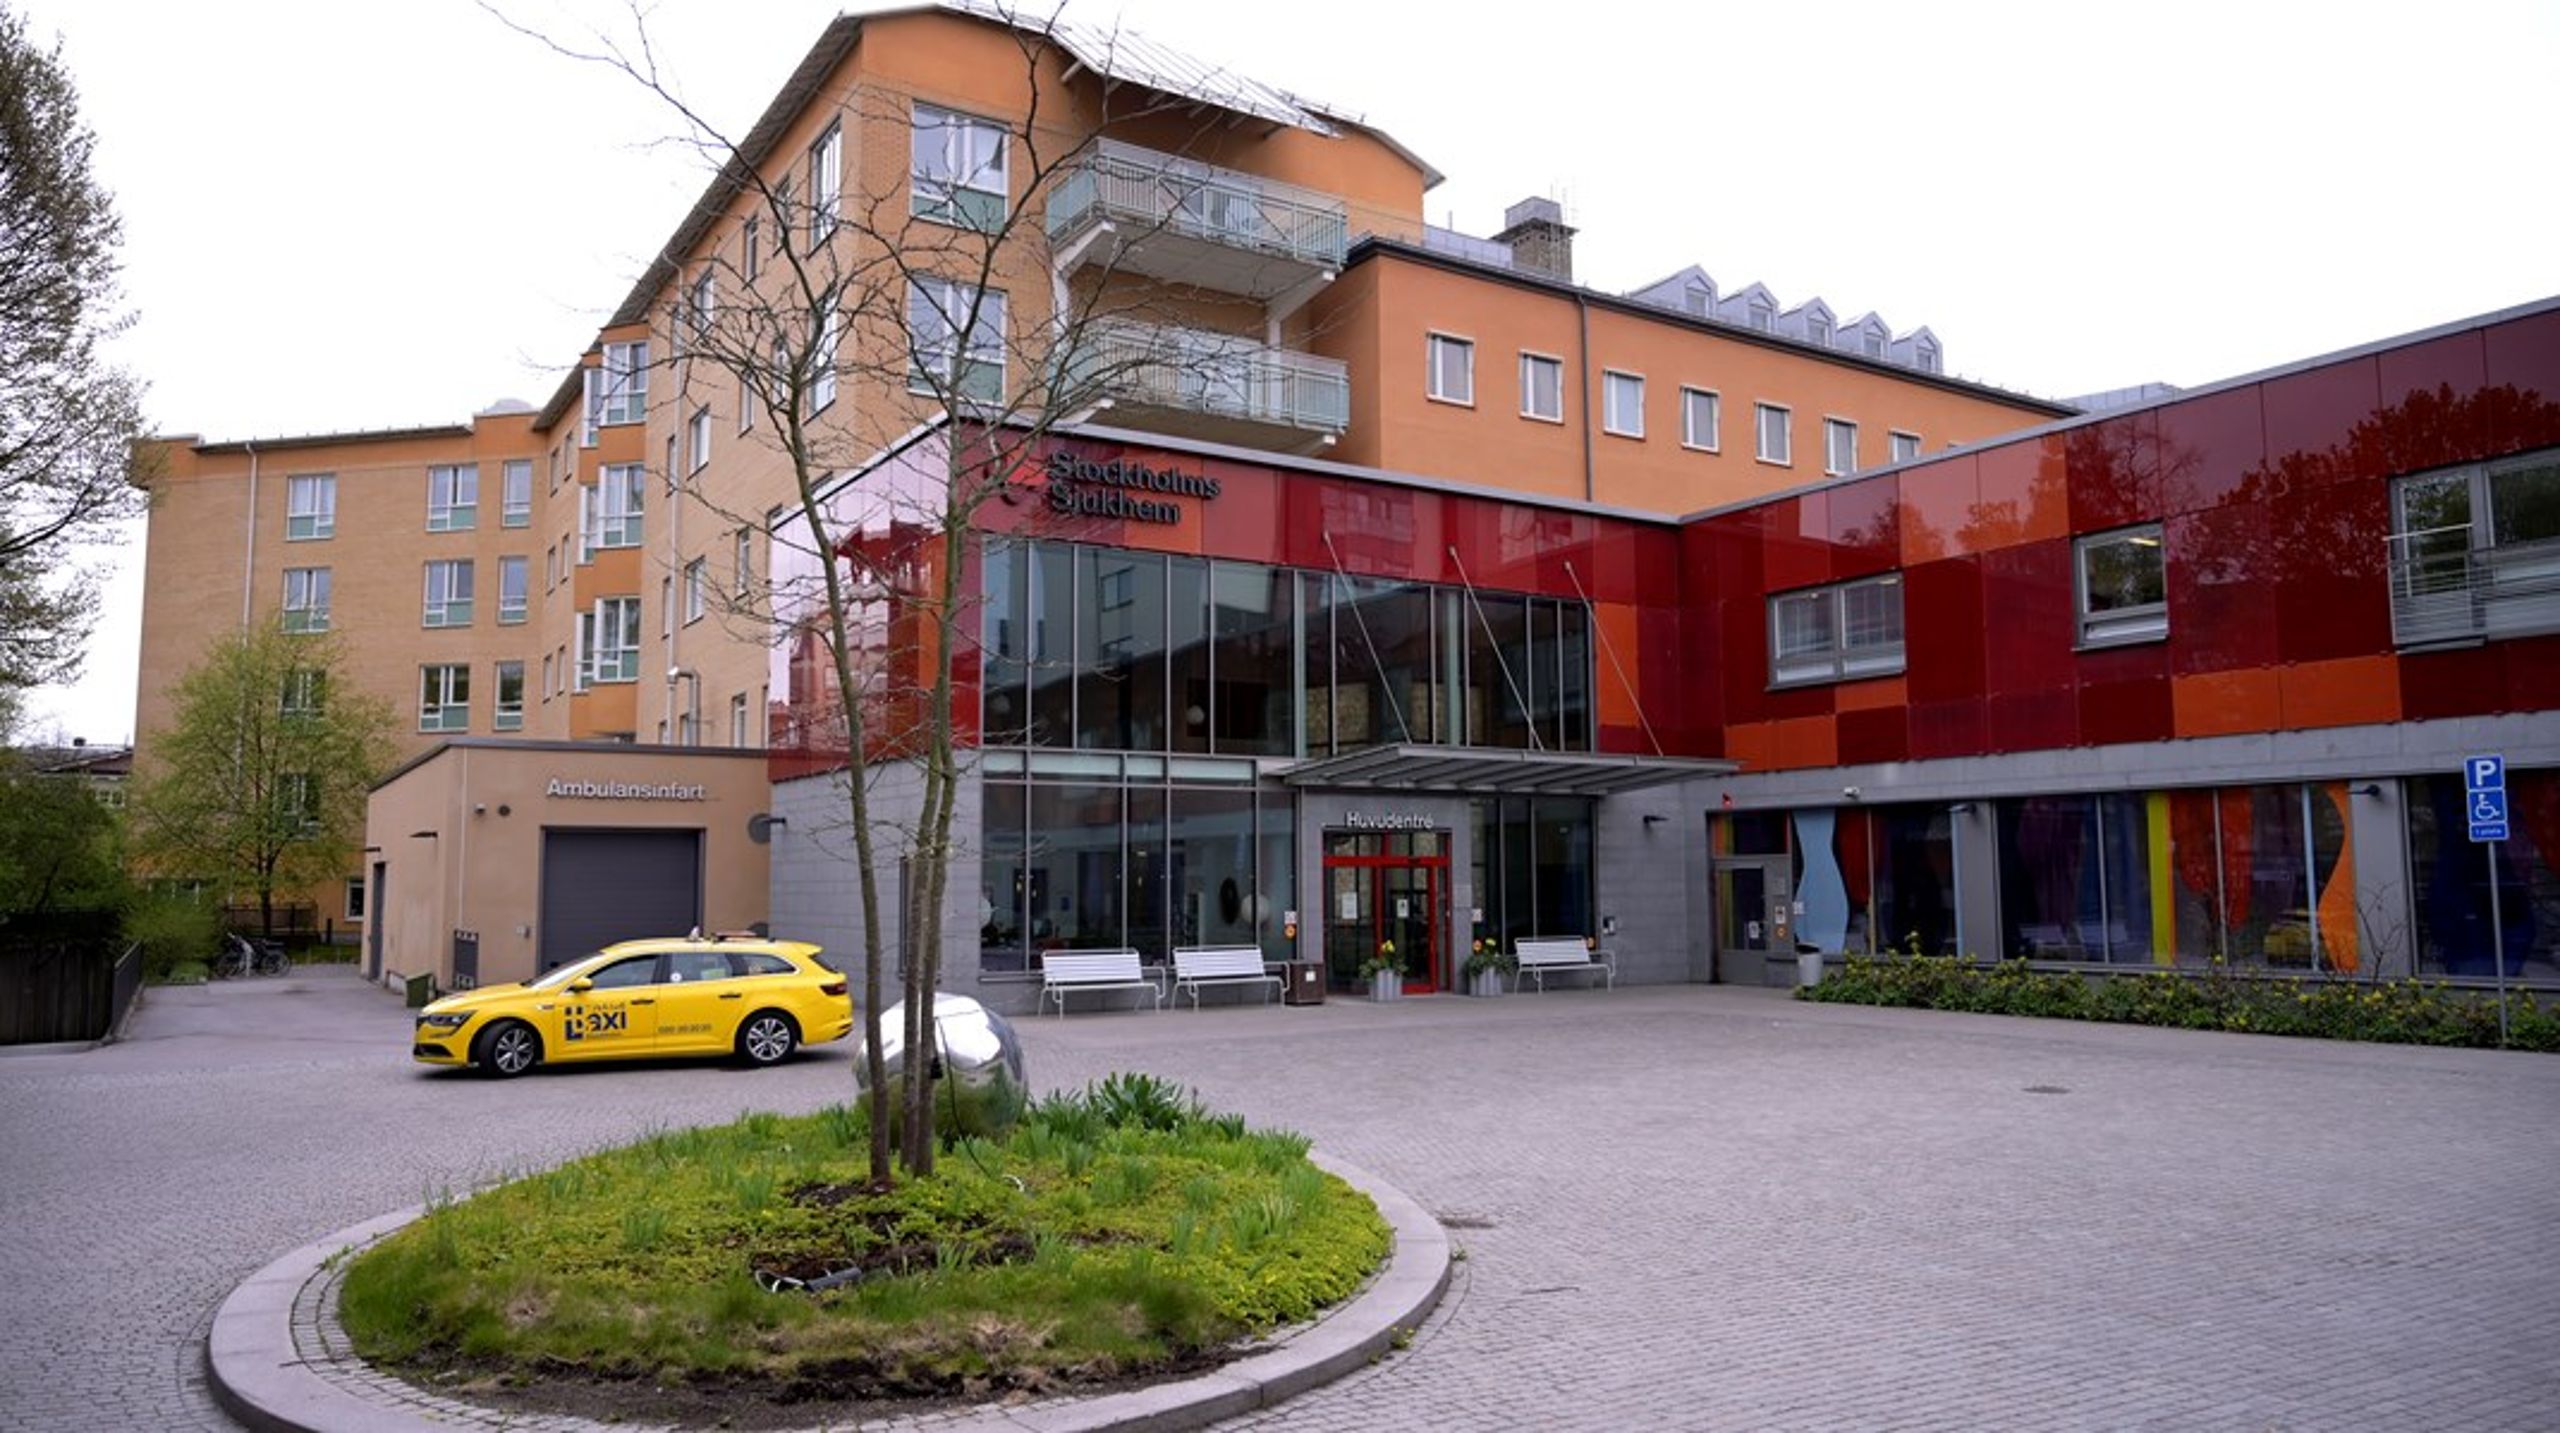 Stockholms sjukhem är en av Sveriges största idéburna aktörer inom välfärden. Regeringen uppger nu att propositionen om idéburen välfärdsverksamhet, som har skjutits fram flera gånger, ska läggas fram den 11 mars.&nbsp;